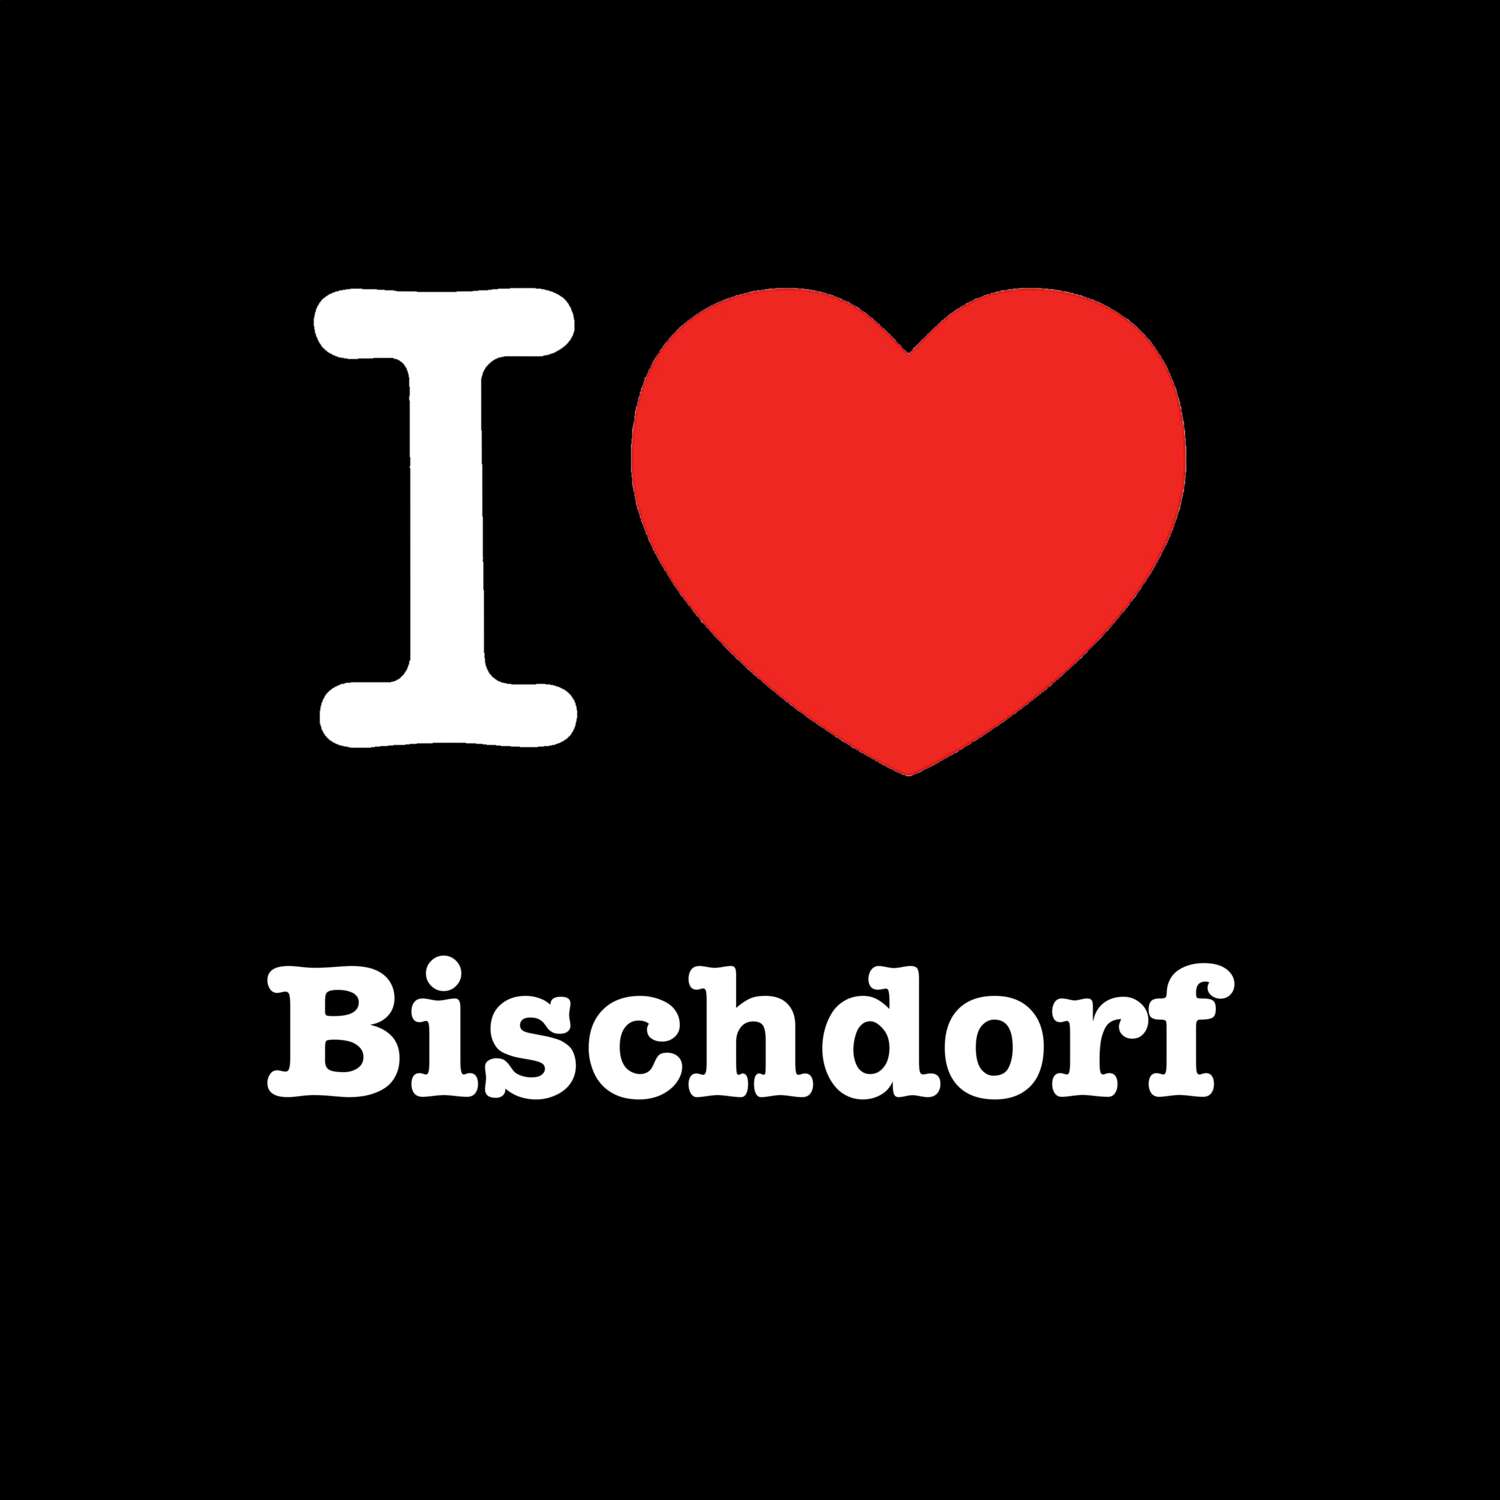 Bischdorf T-Shirt »I love«